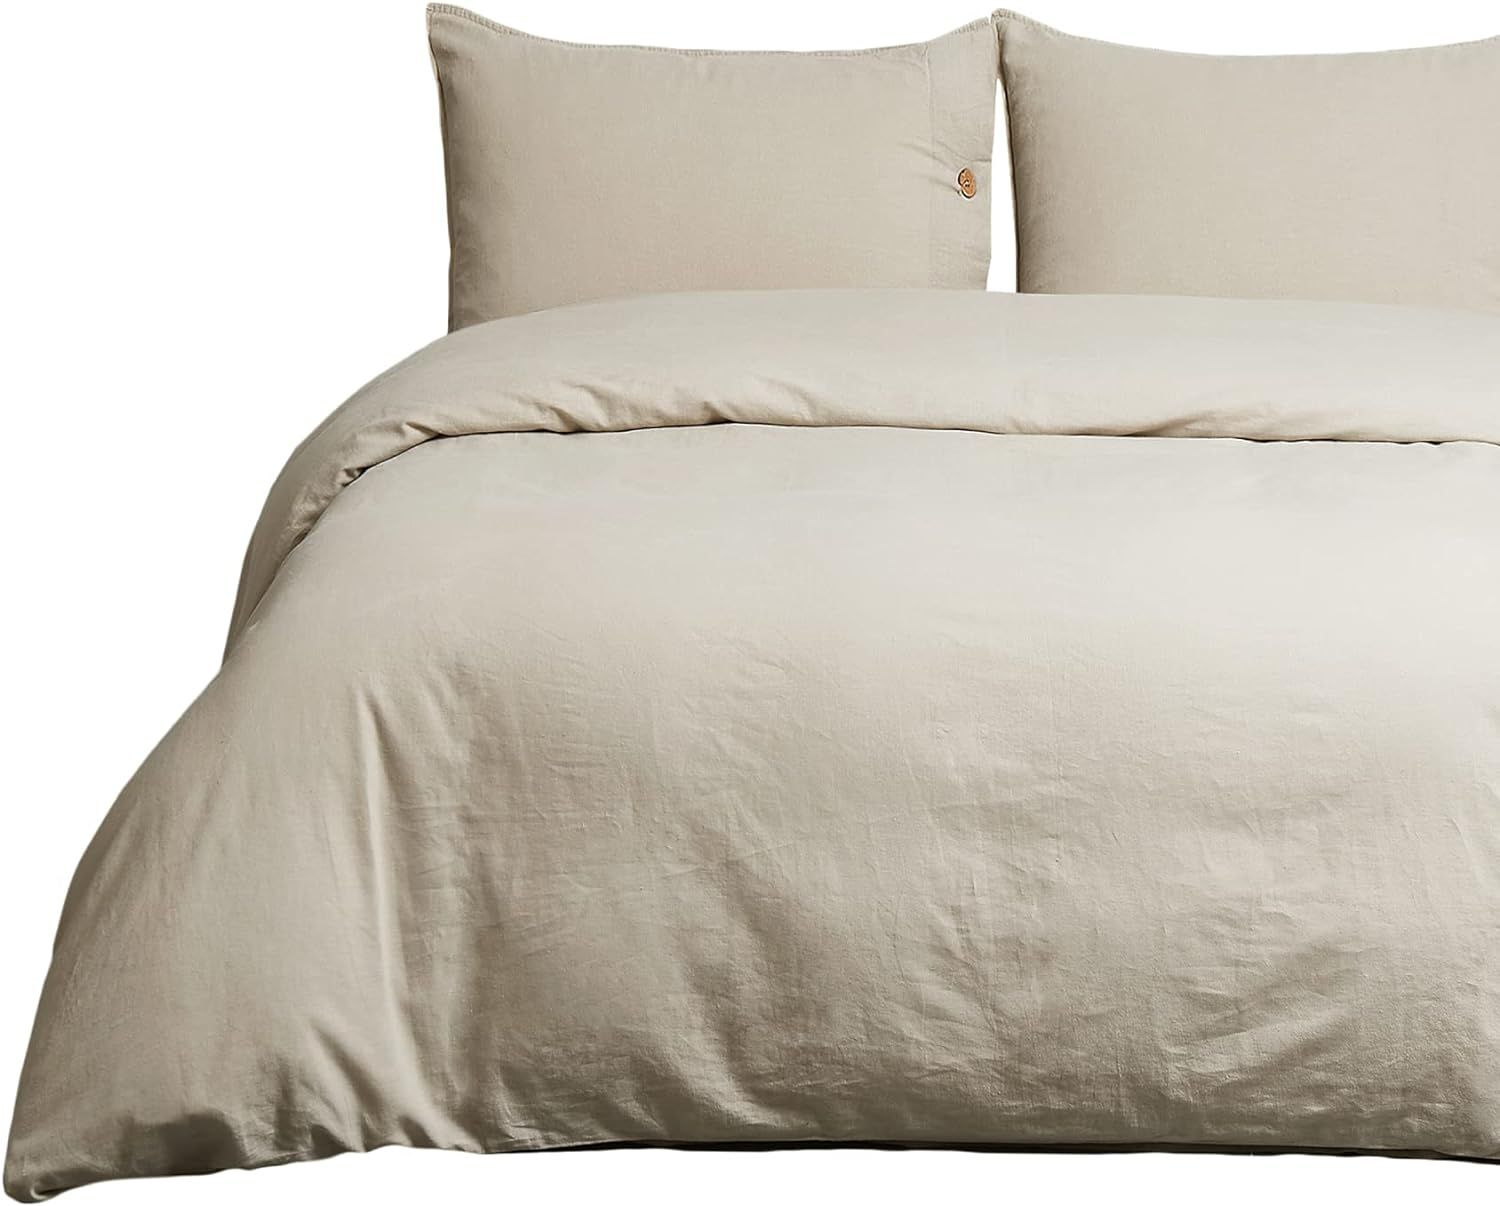 Bedsure Linen Duvet Cover Queen Linen Cotton Blend Duvet Cover Set - 3 Pieces Comforter Cover Set... | Amazon (US)